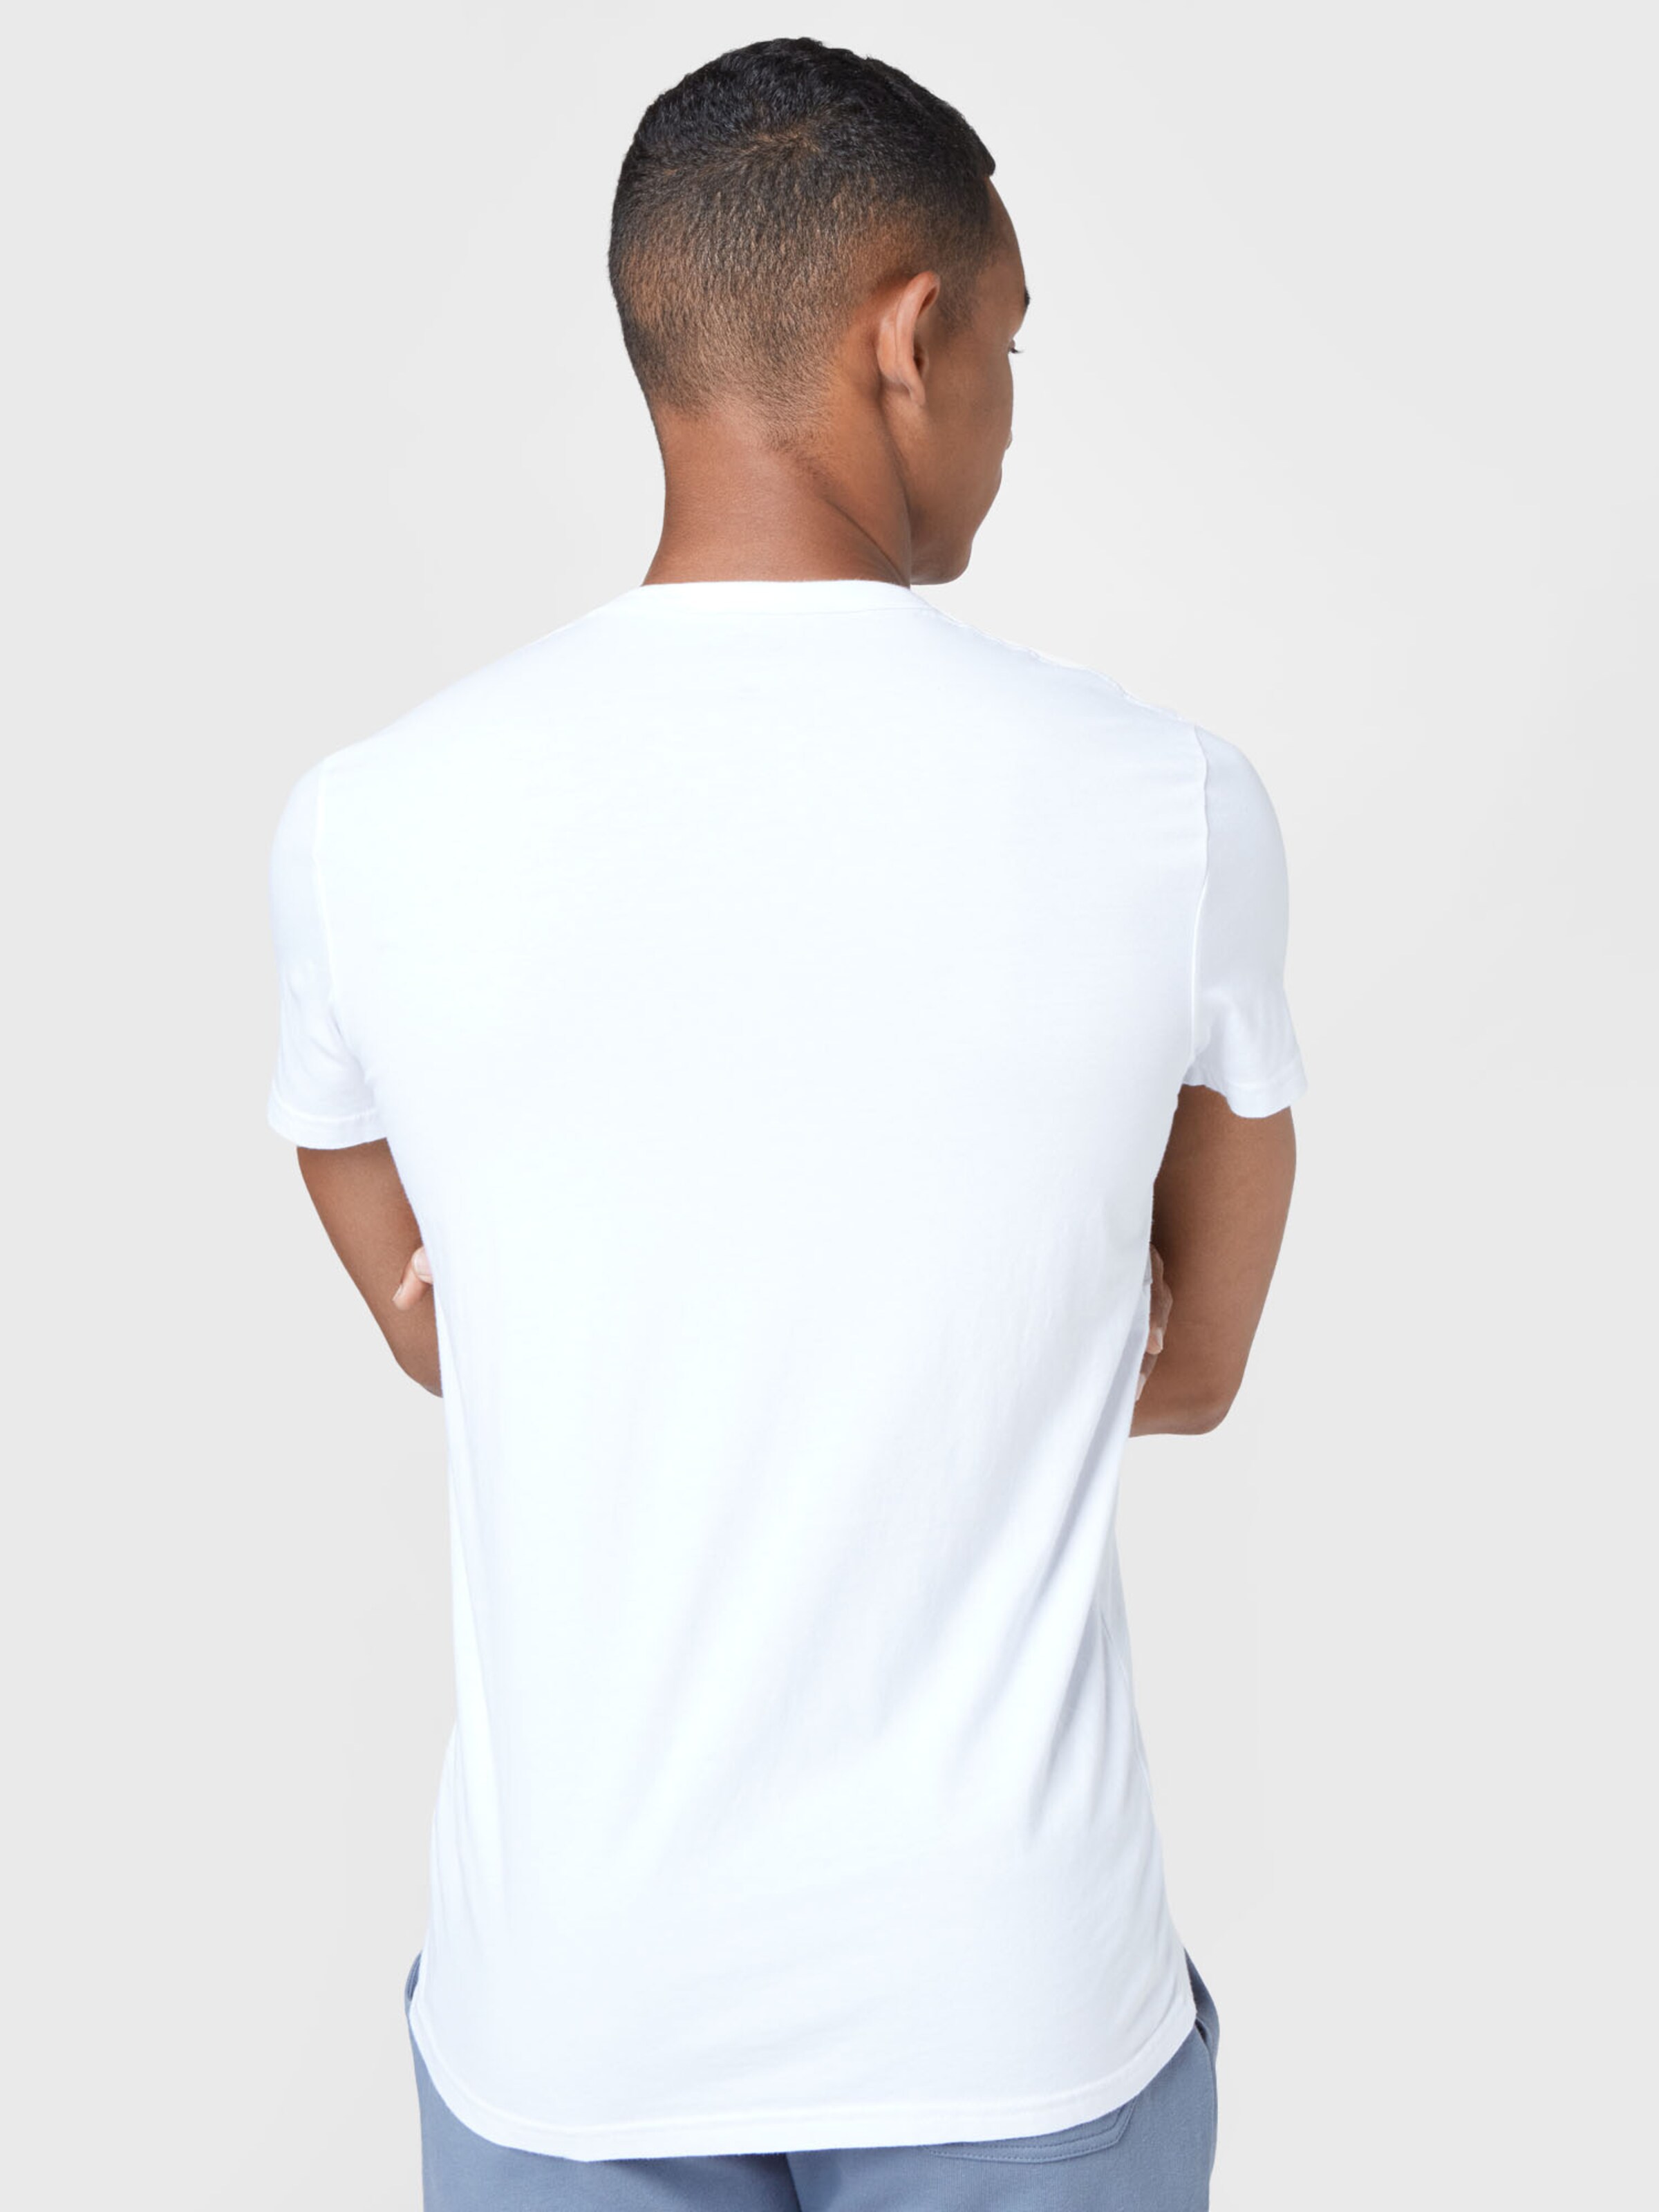 Männer Shirts HOLLISTER T-Shirt in Weiß - FR60500